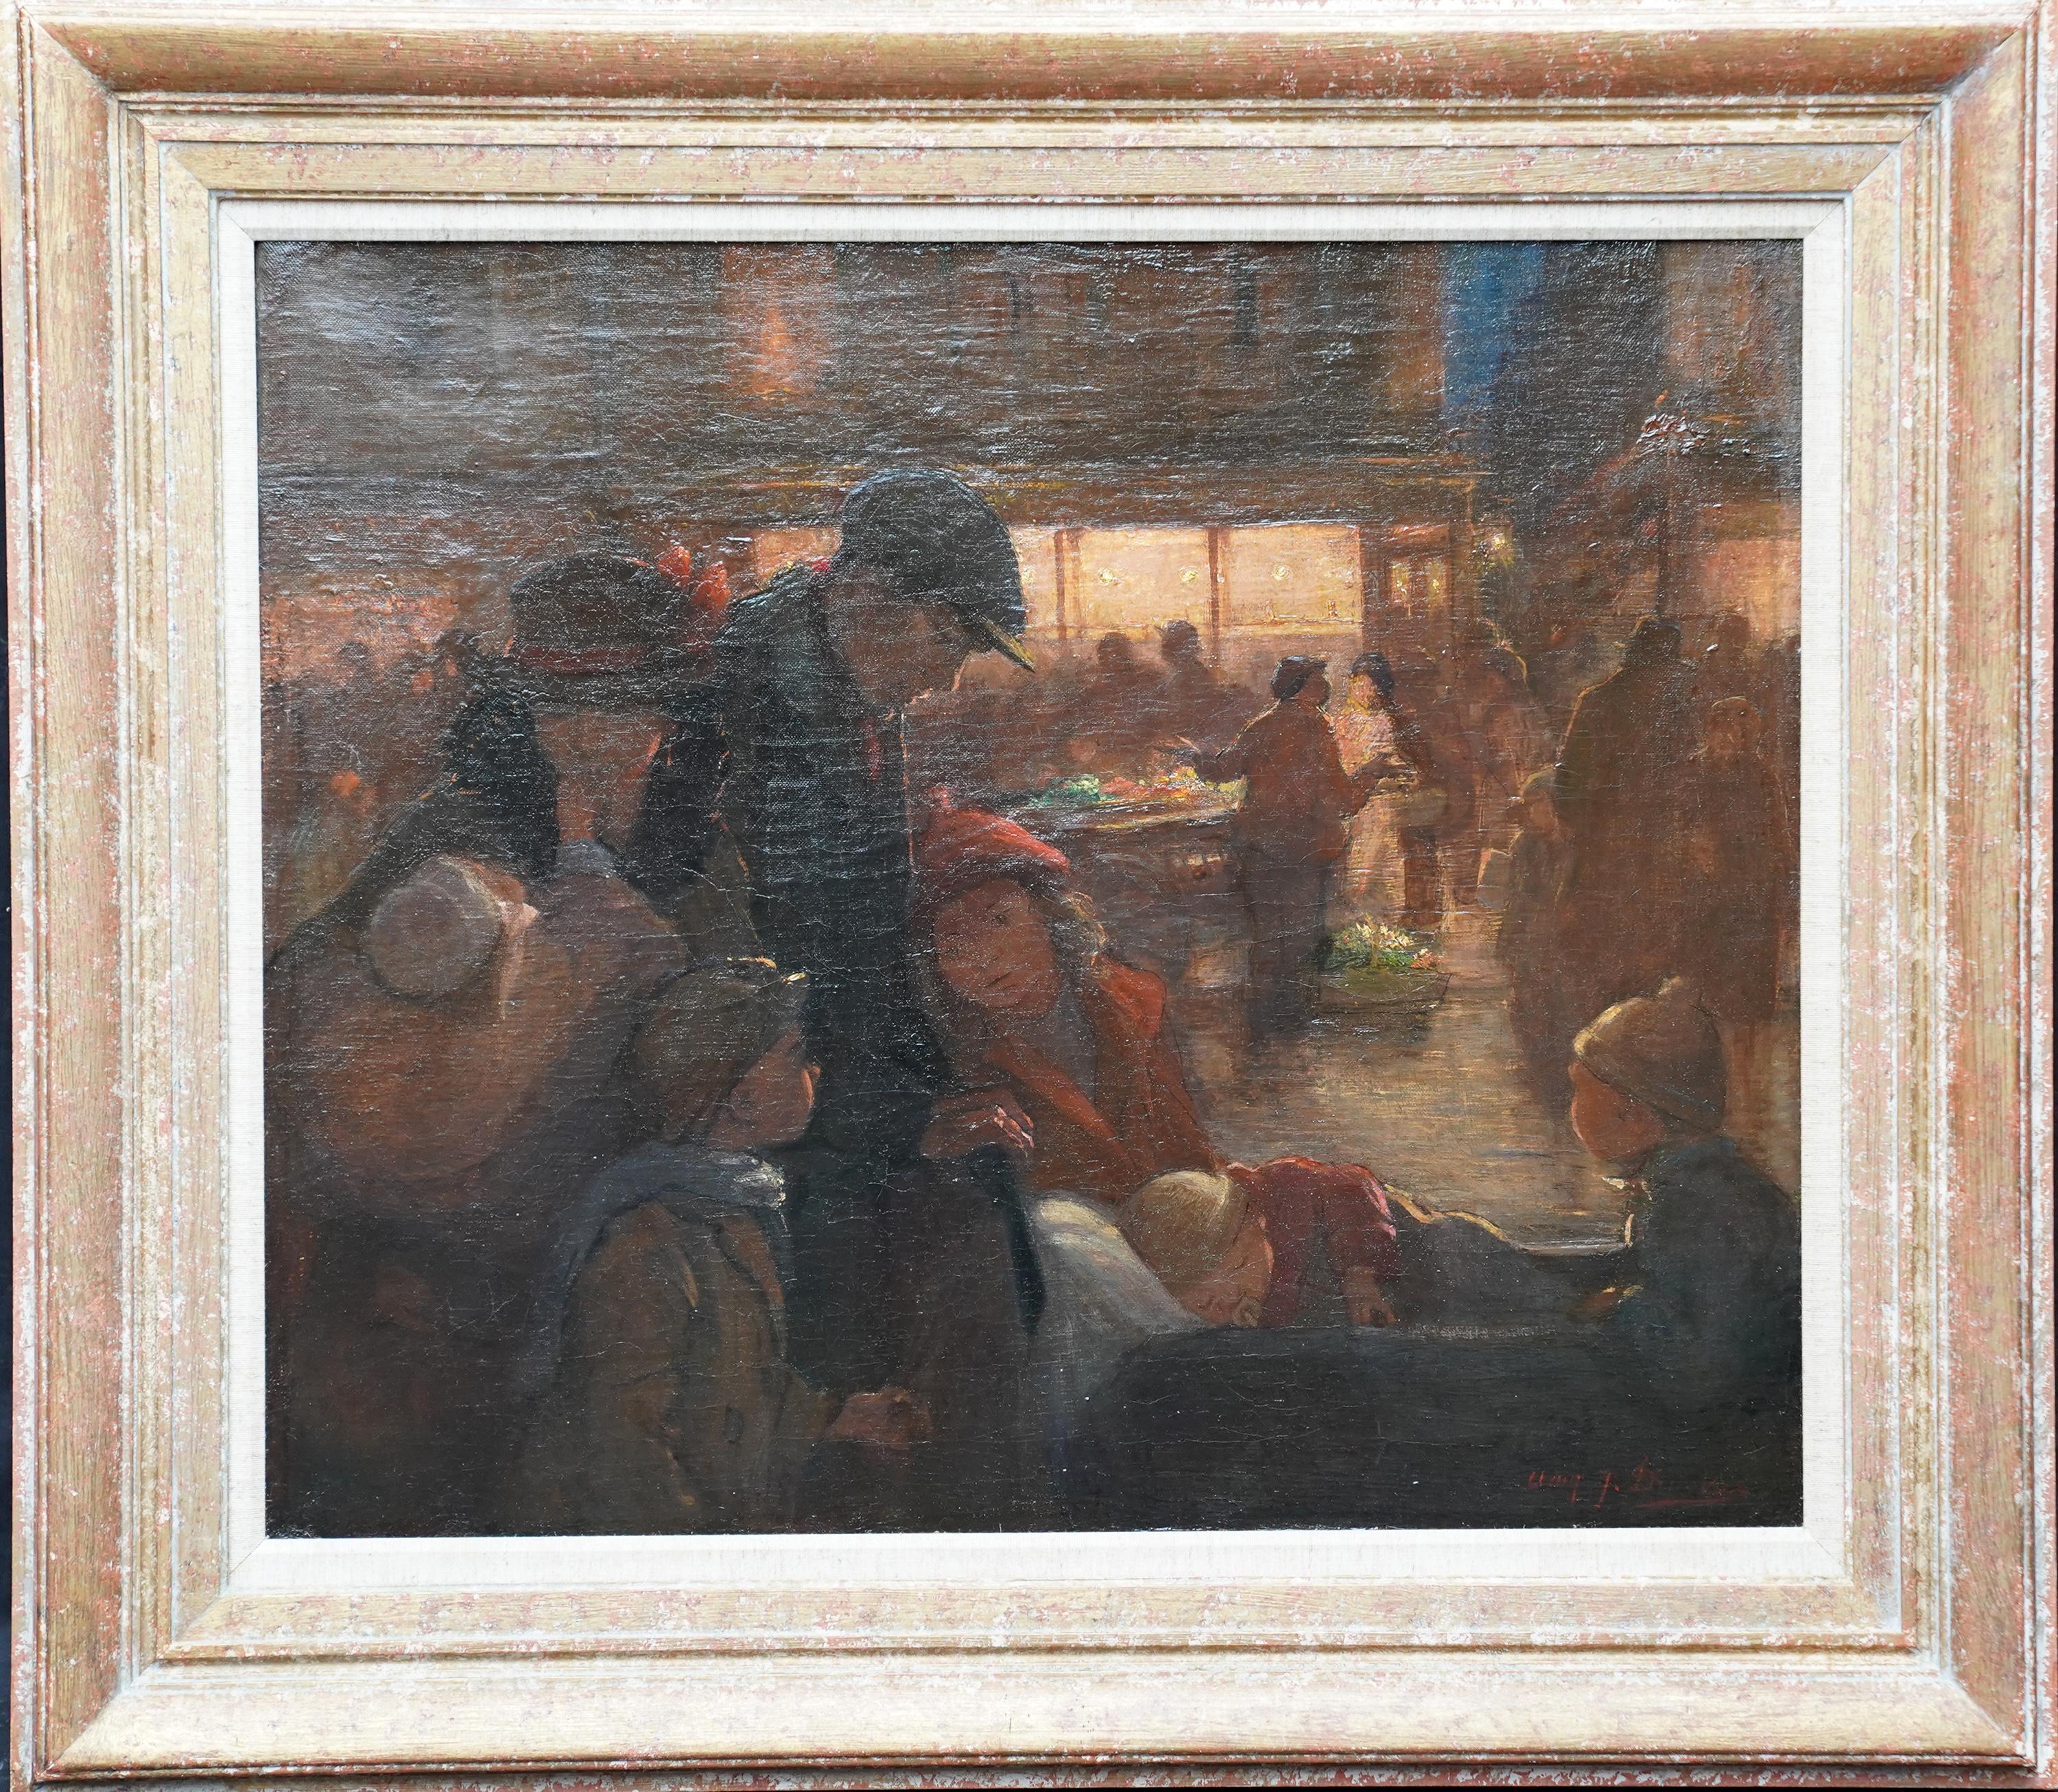 Portrait de famille sur le marché - Peinture à l'huile post-impressionniste britannique de 1914